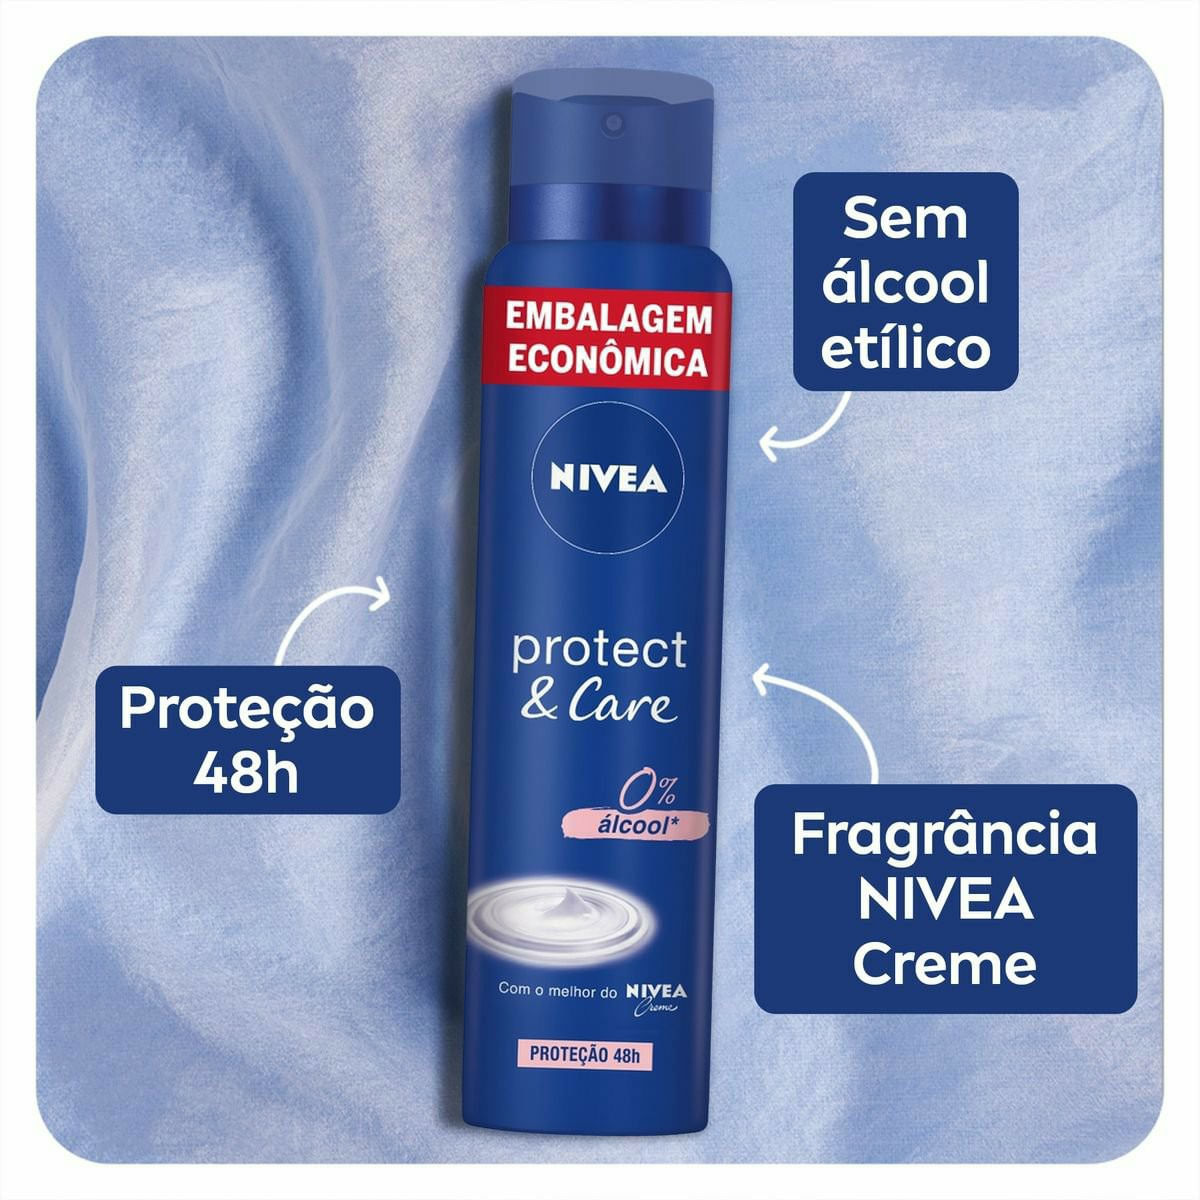 Desodorante Antitranspirante Aerosol Nivea Active Dry Comfort